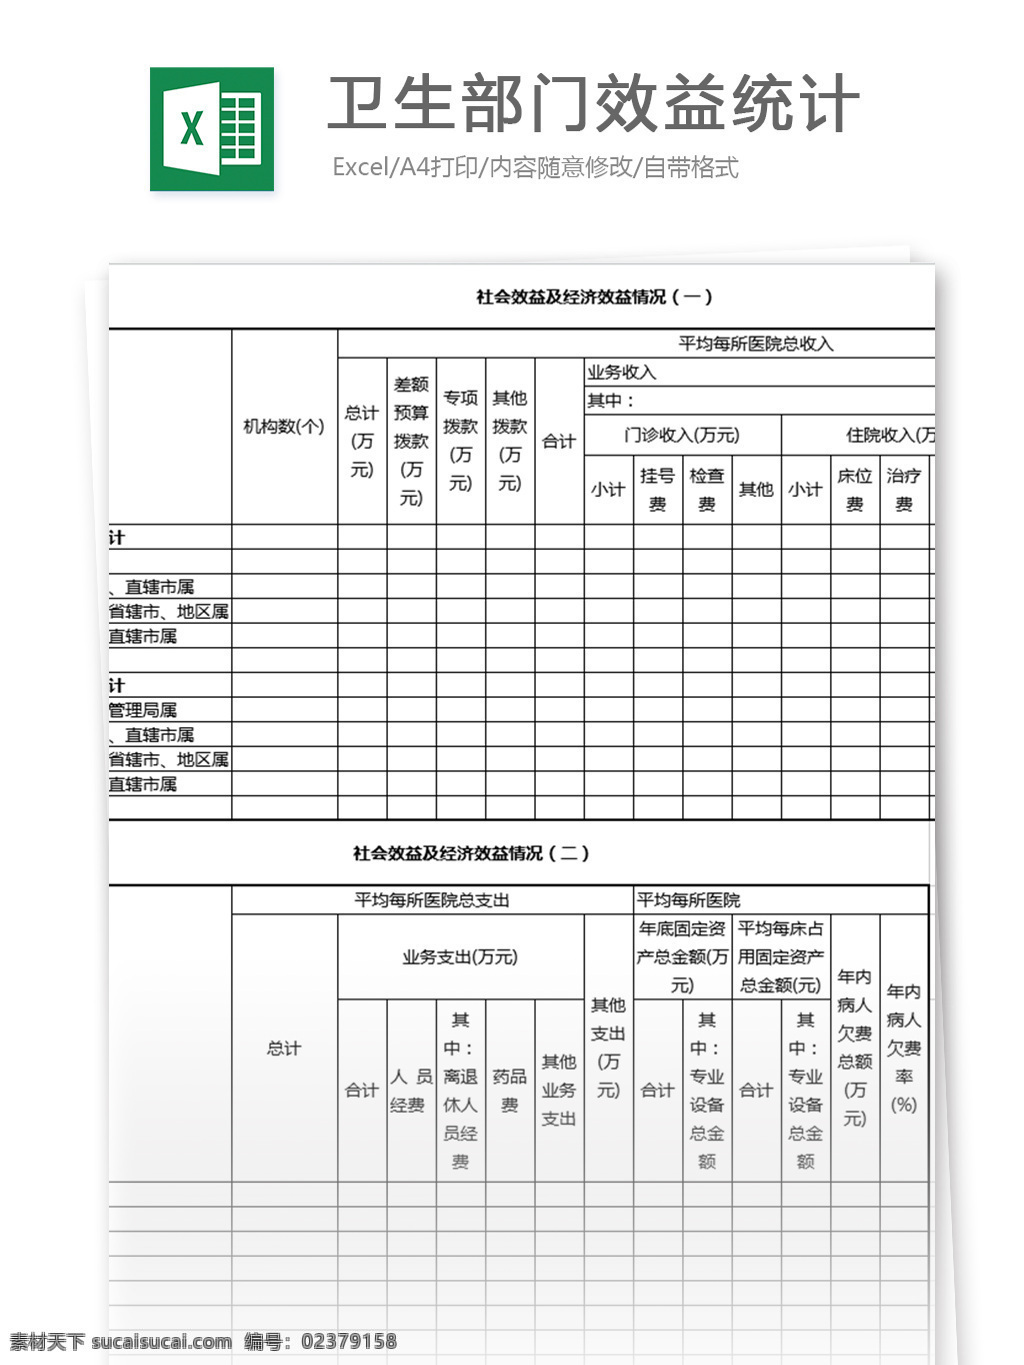 卫生部门 效益 统计 表格 表格模板 图表 表格设计 绩效考核 统计表